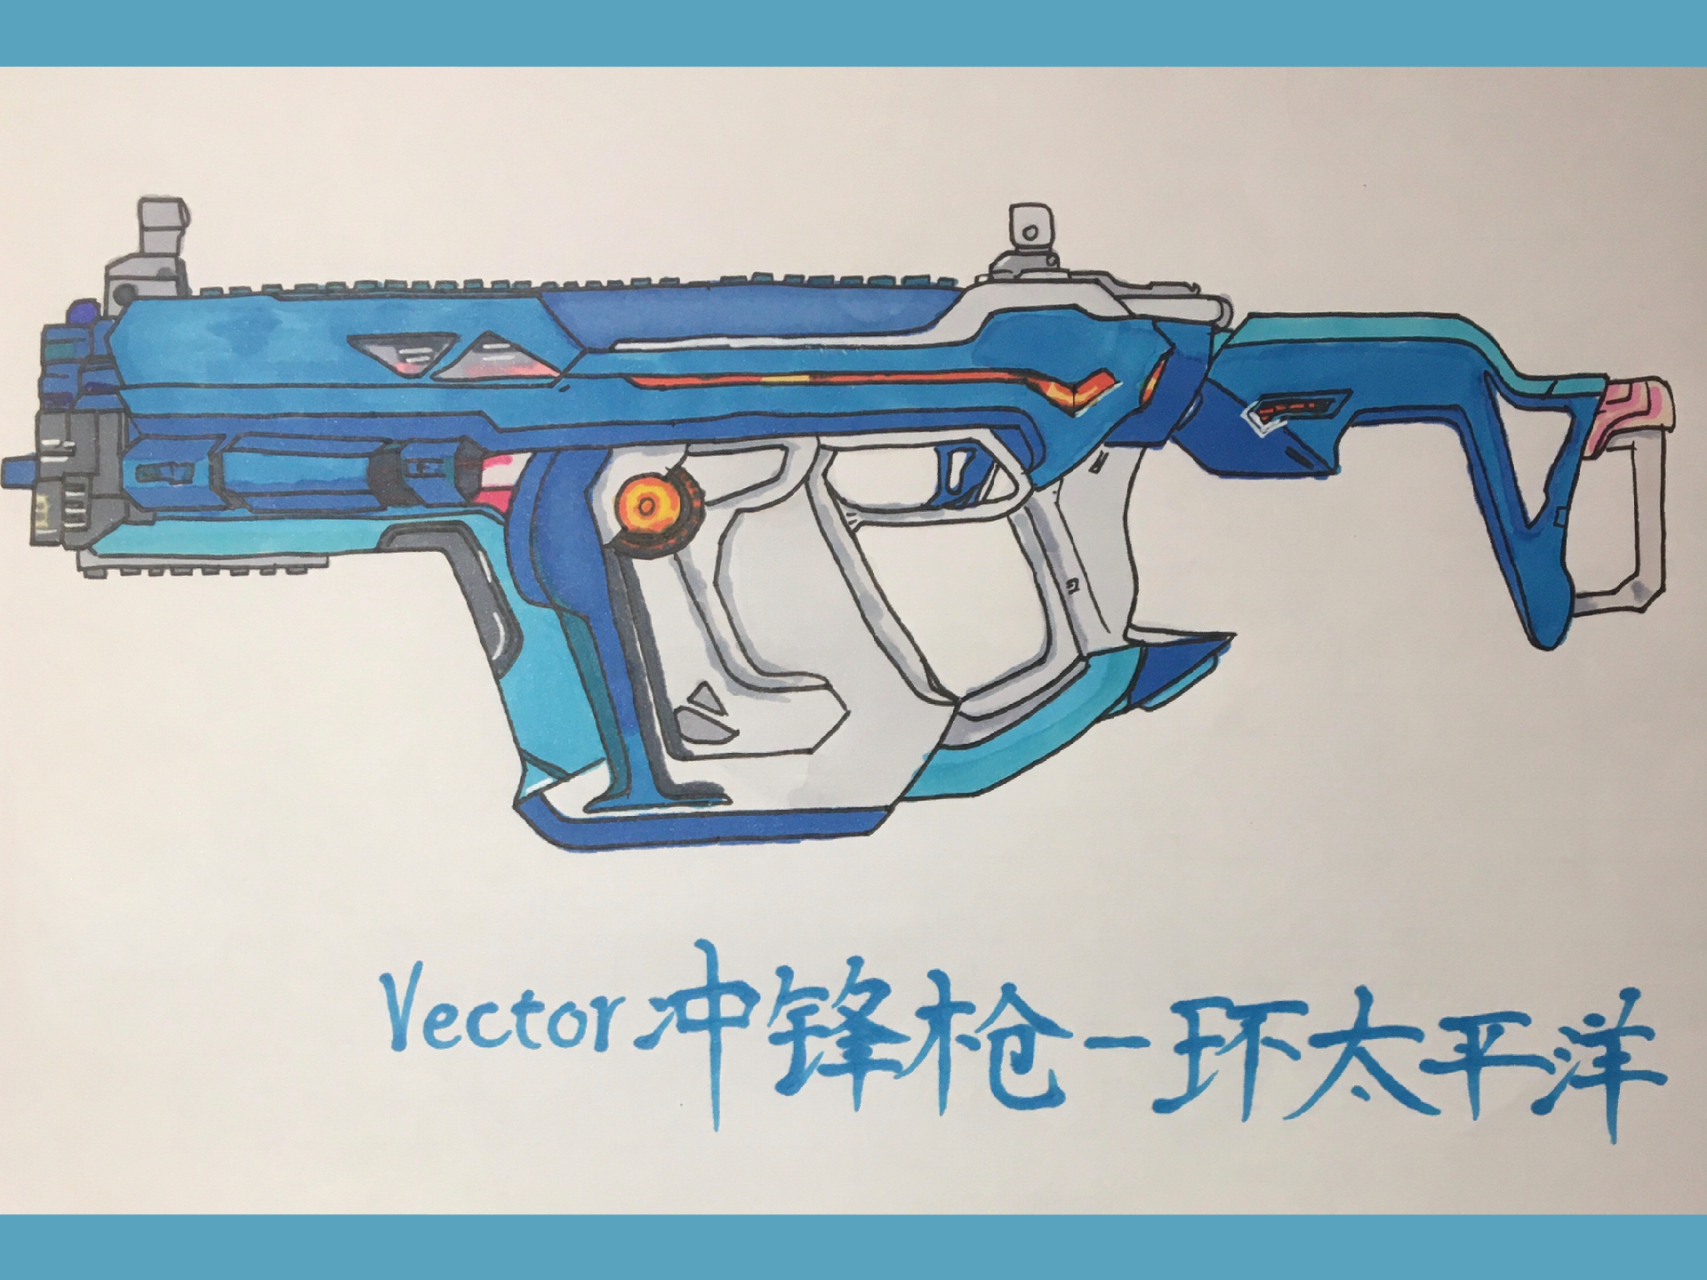 和平精英枪械简笔画 vector冲锋枪